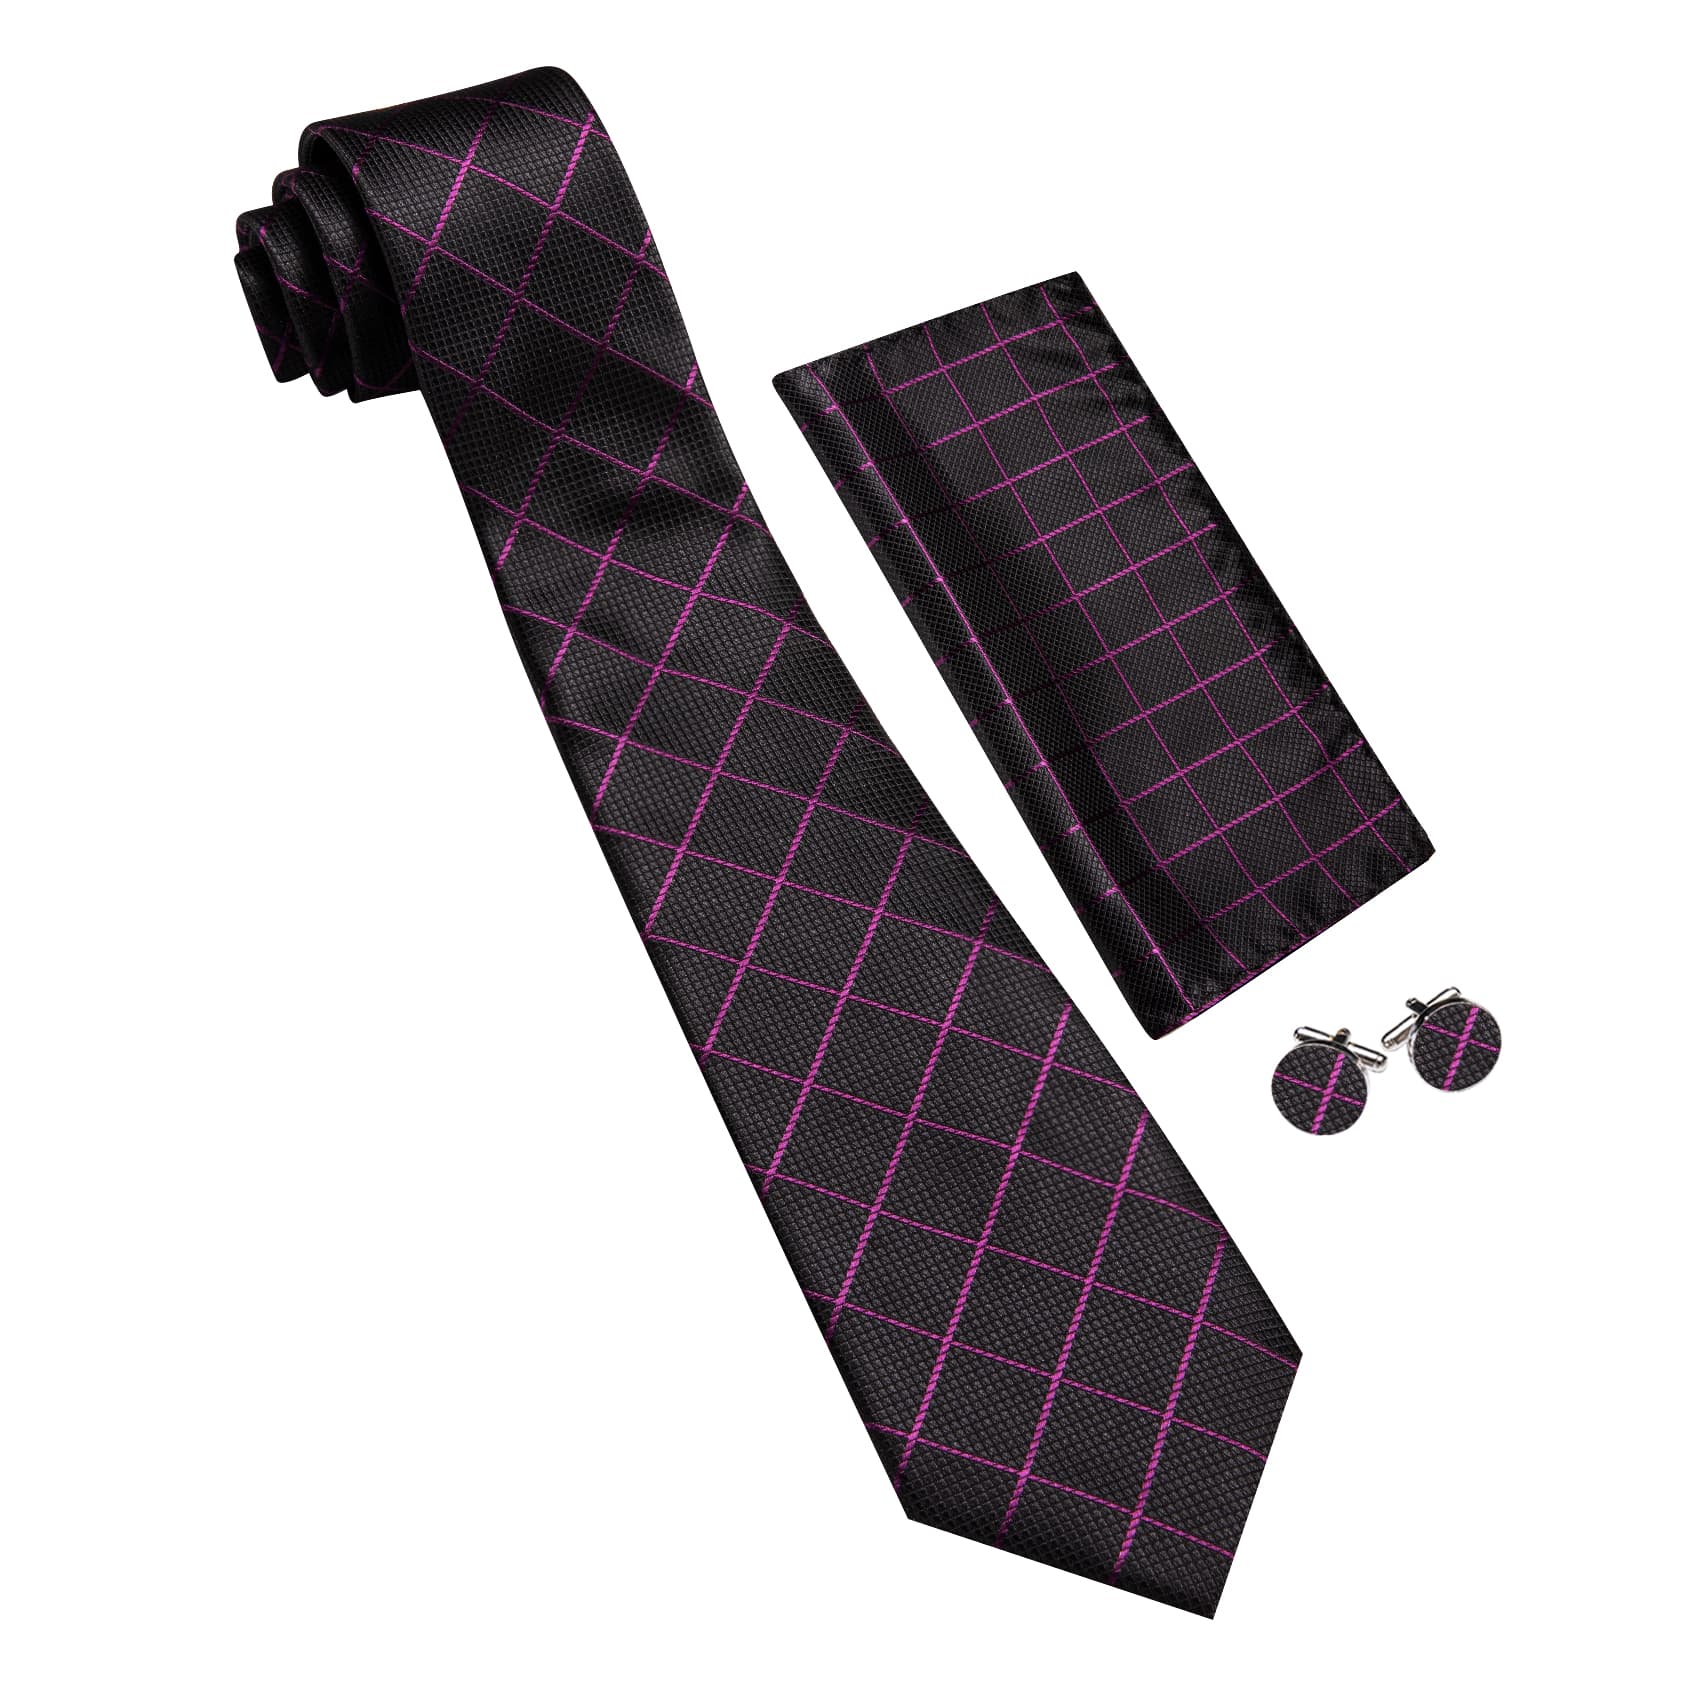  Black Plaid Tie with Purple Stripes Men's Business Set